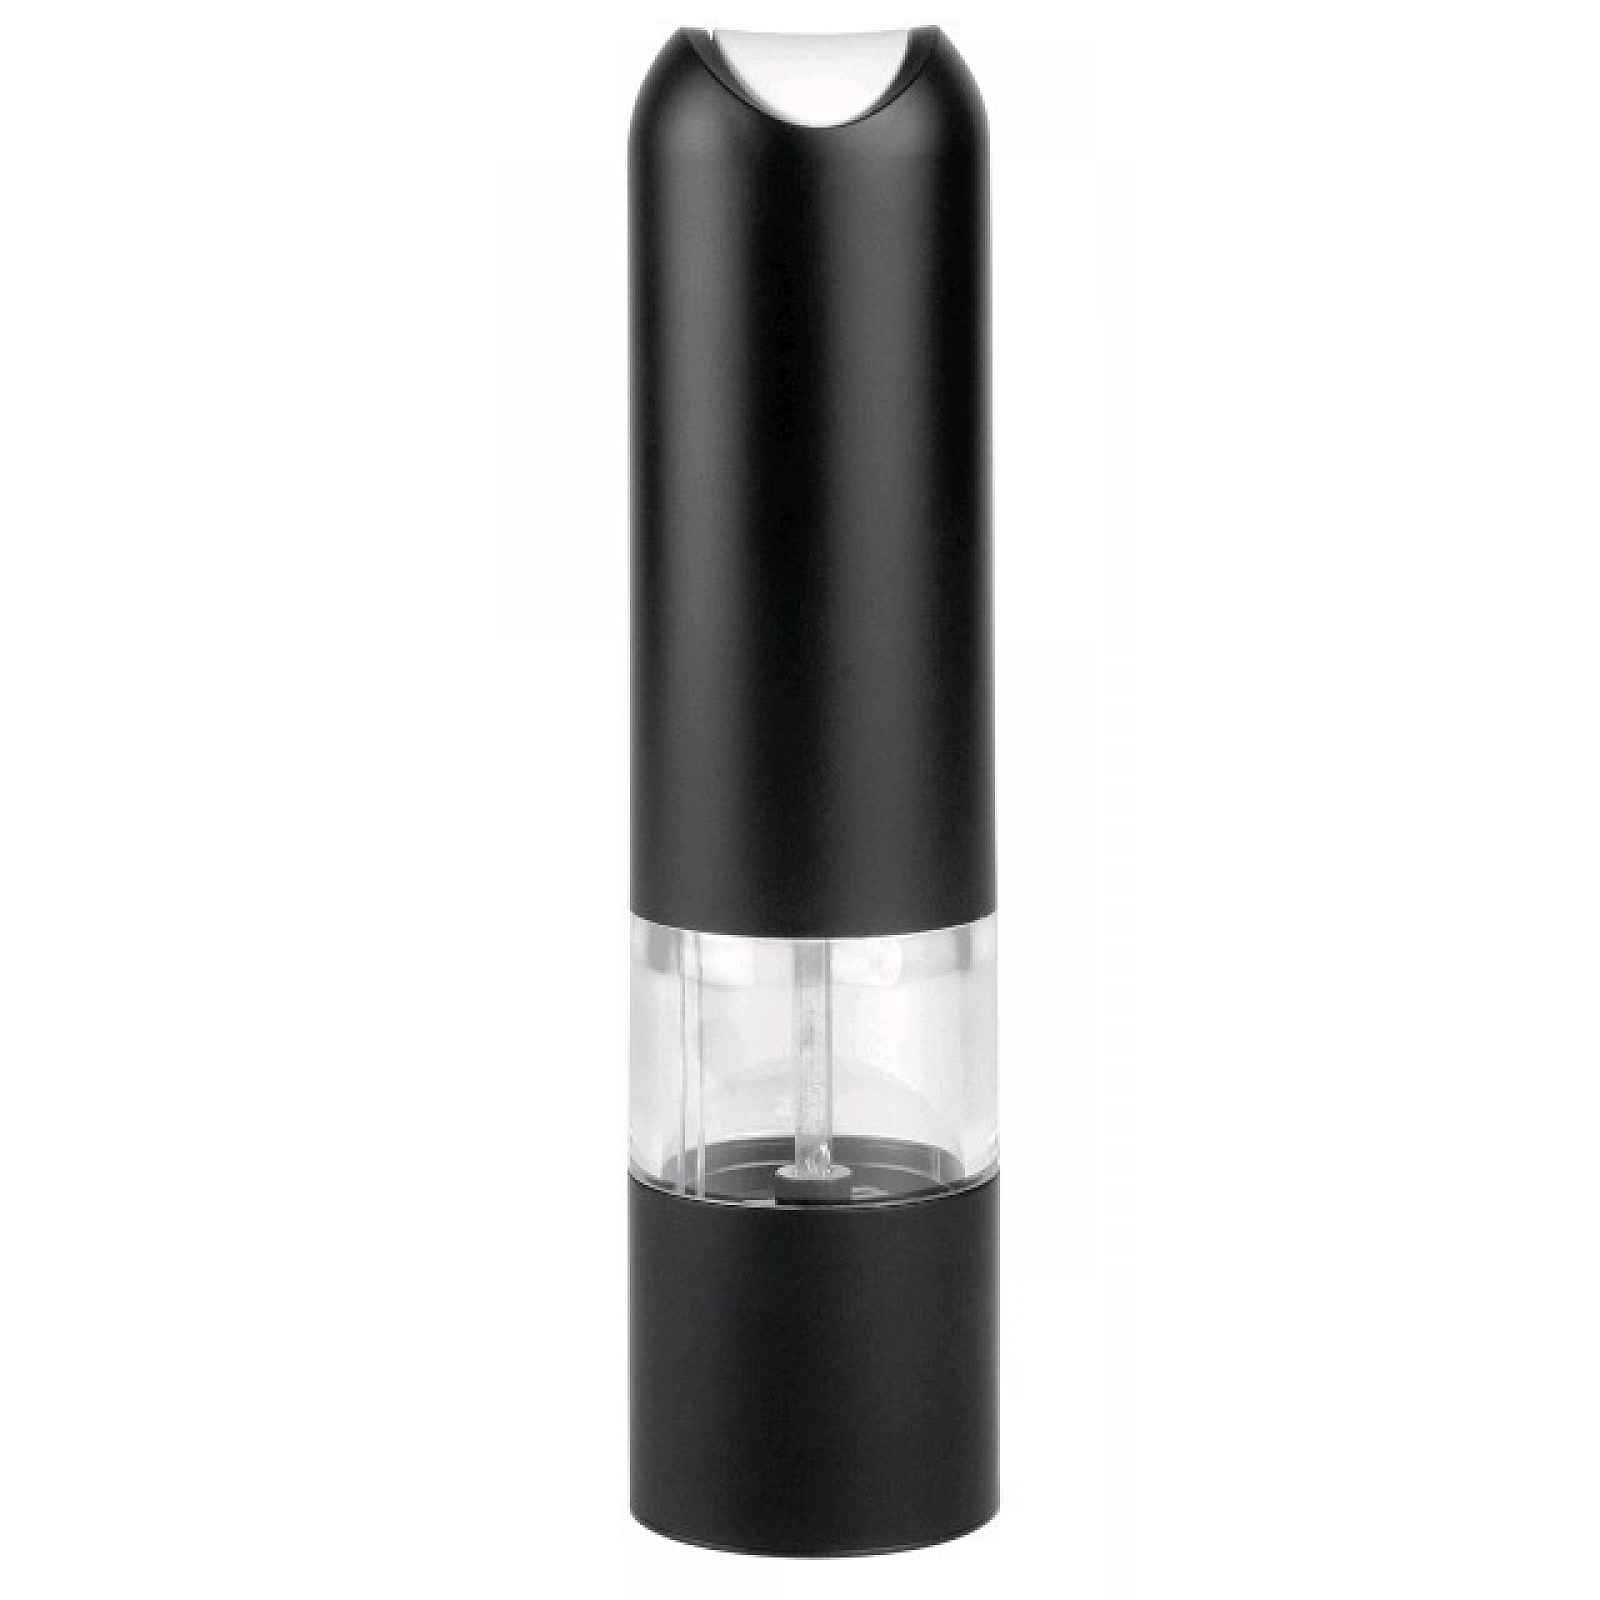 Elektrický mlýnek na pepř/sůl LifeStyle 21 cm, černý